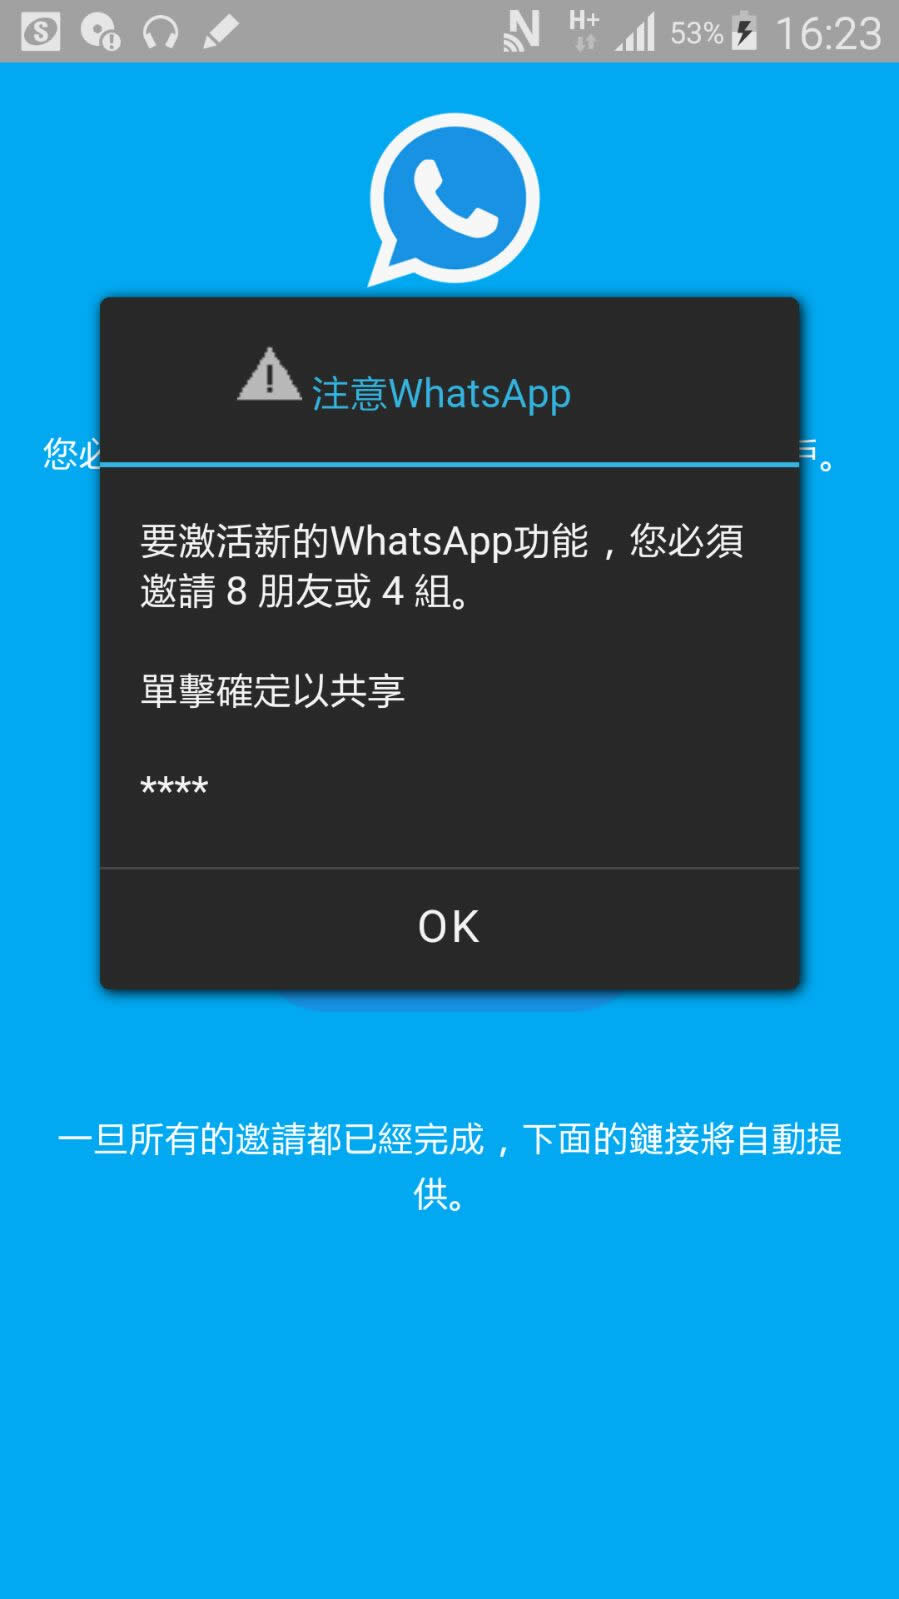 whatsapp官网版载_官网whatsapp下载安装_whatsapp官网最新版本